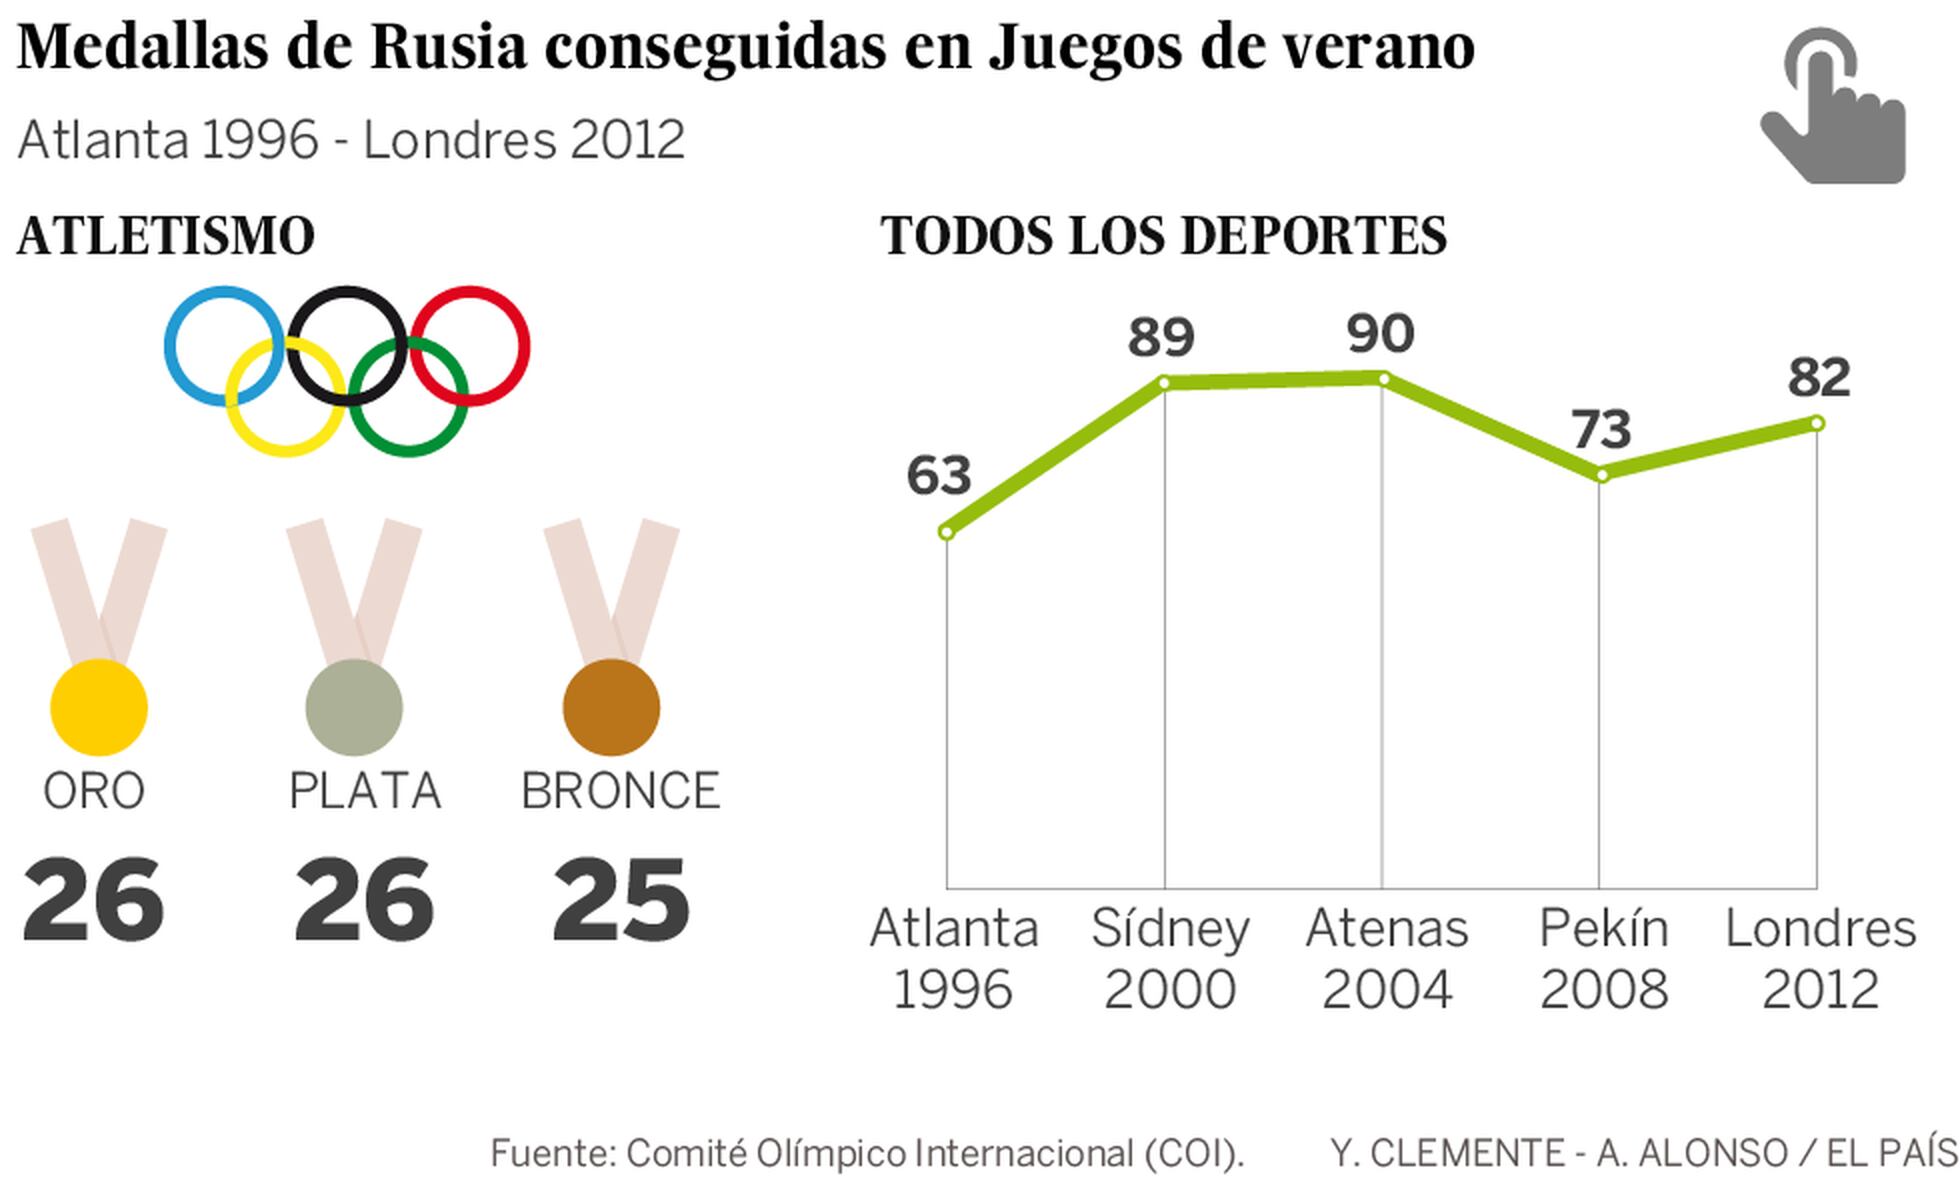 Rio-2016: Russa que delatou escândalo de doping é liberada para